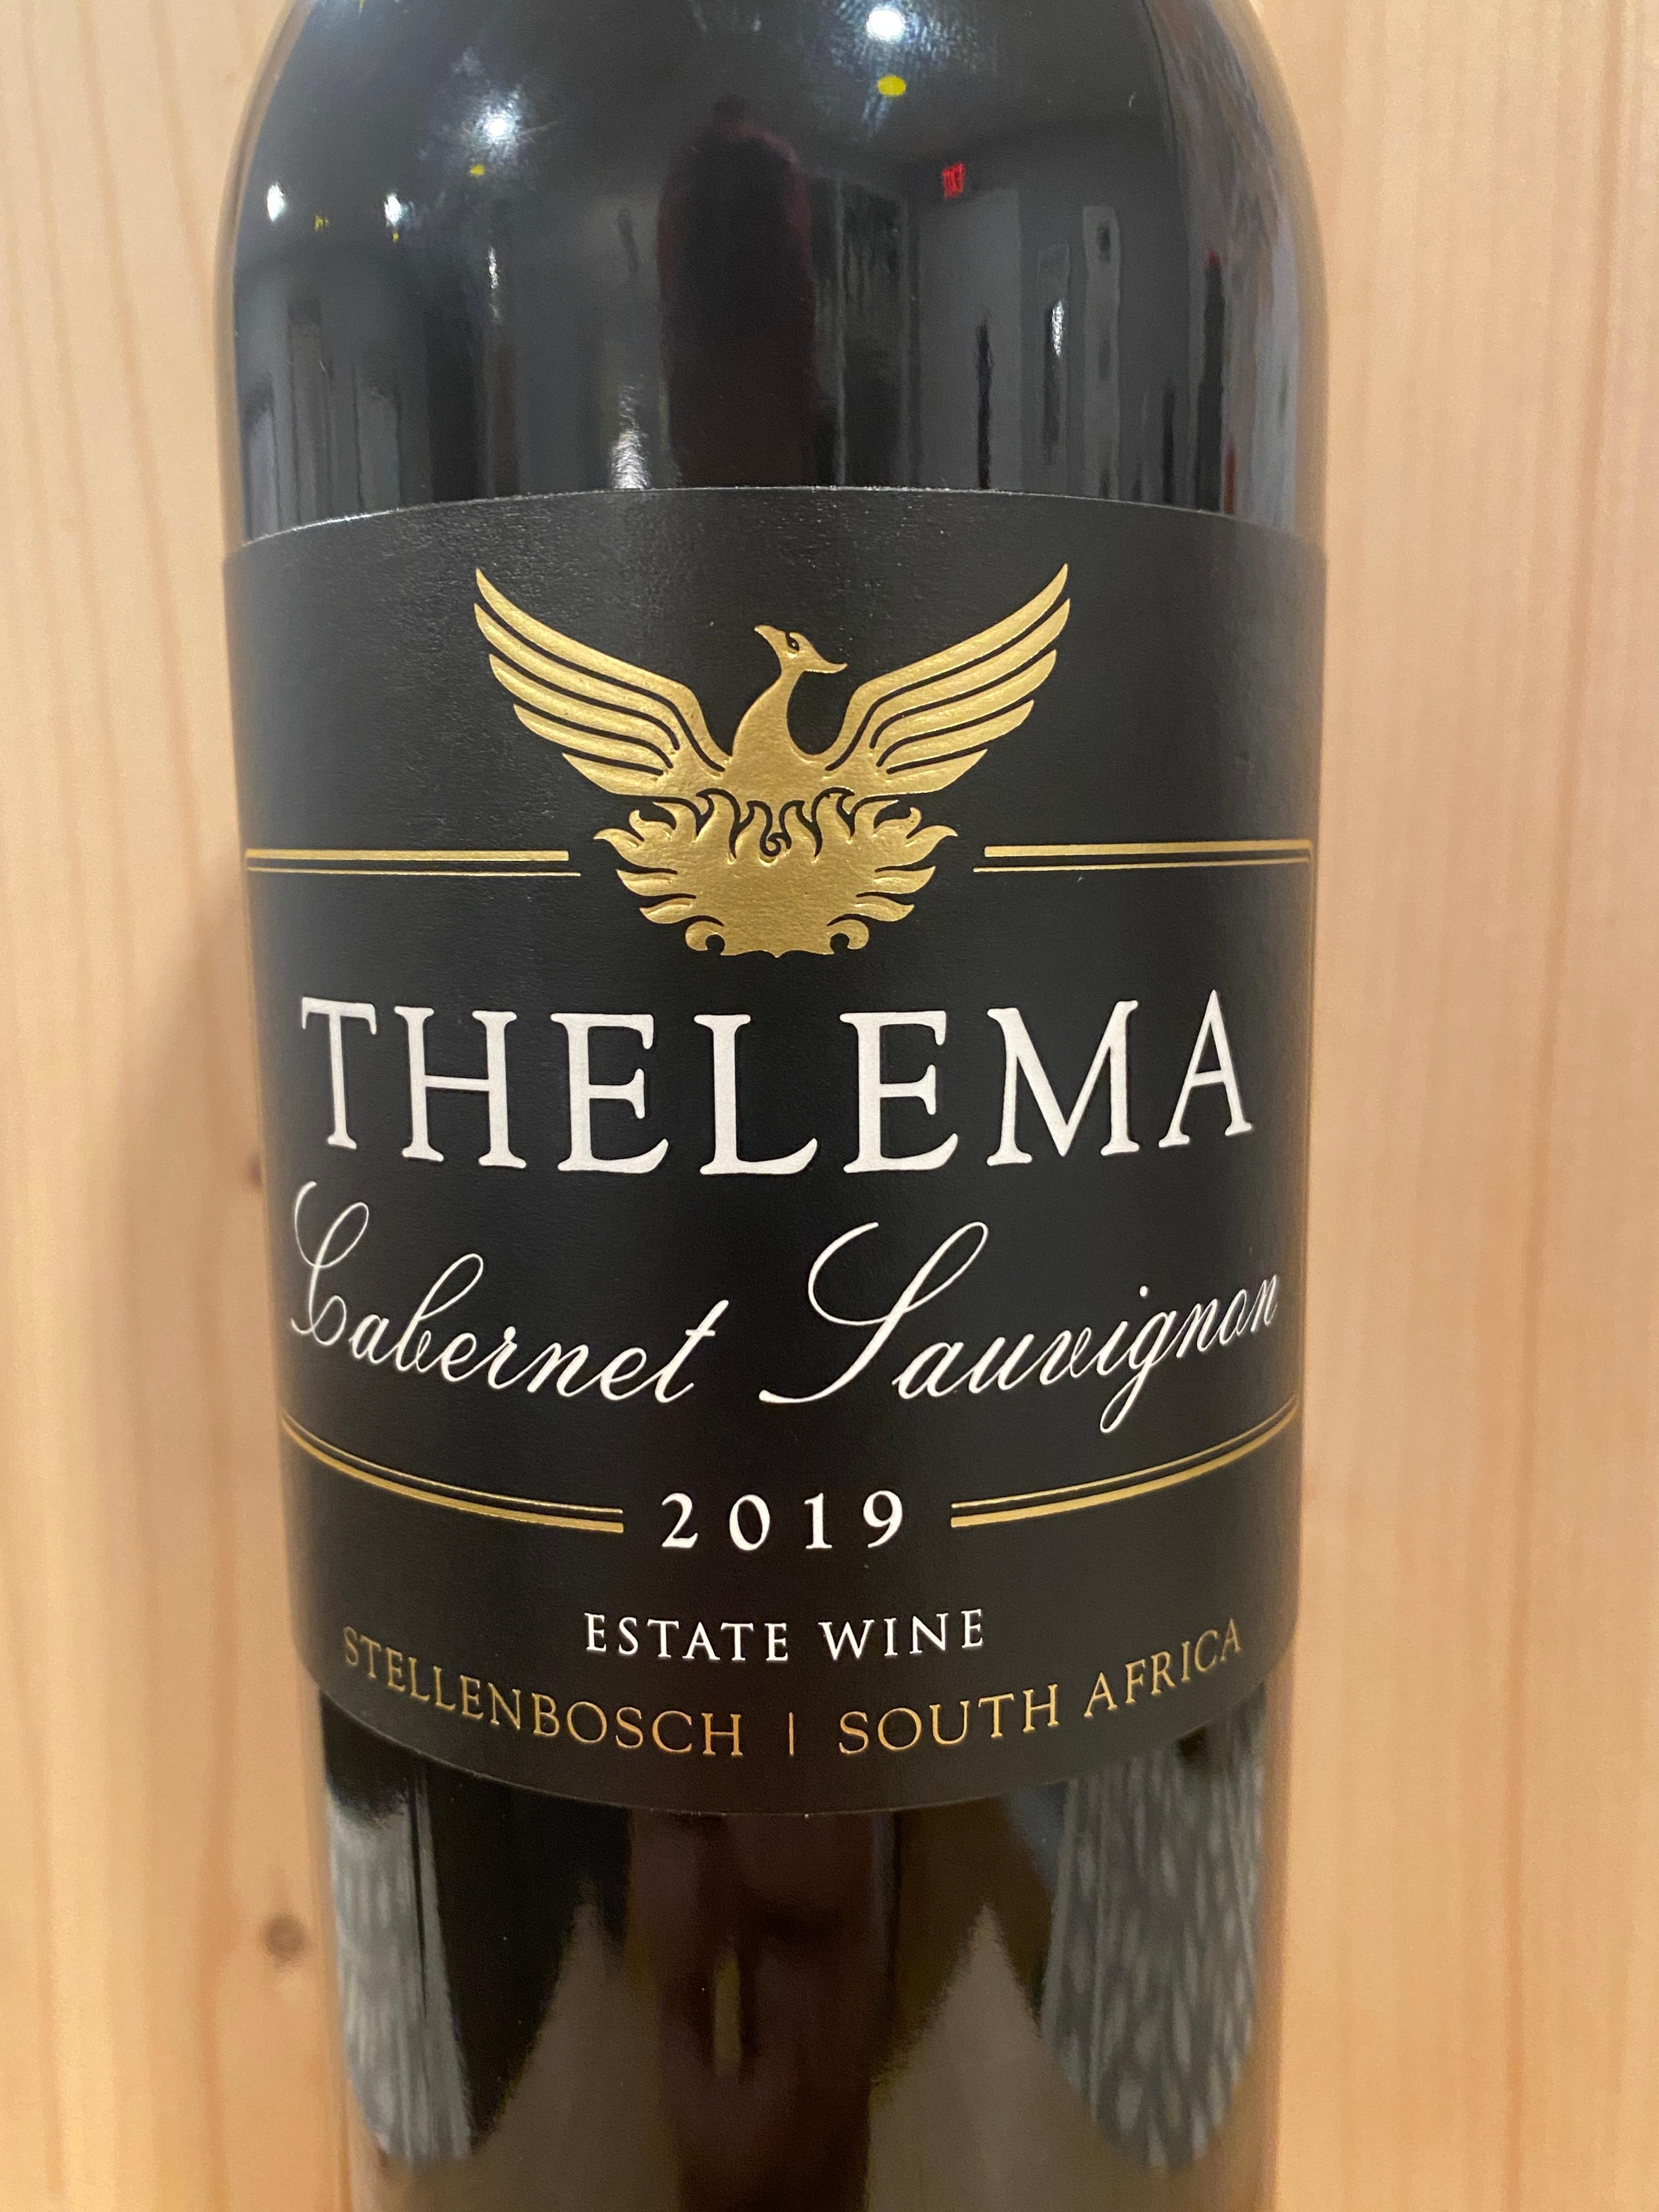 Thelema Cabernet Sauvignon 2019: Stellenbosch, South Africa